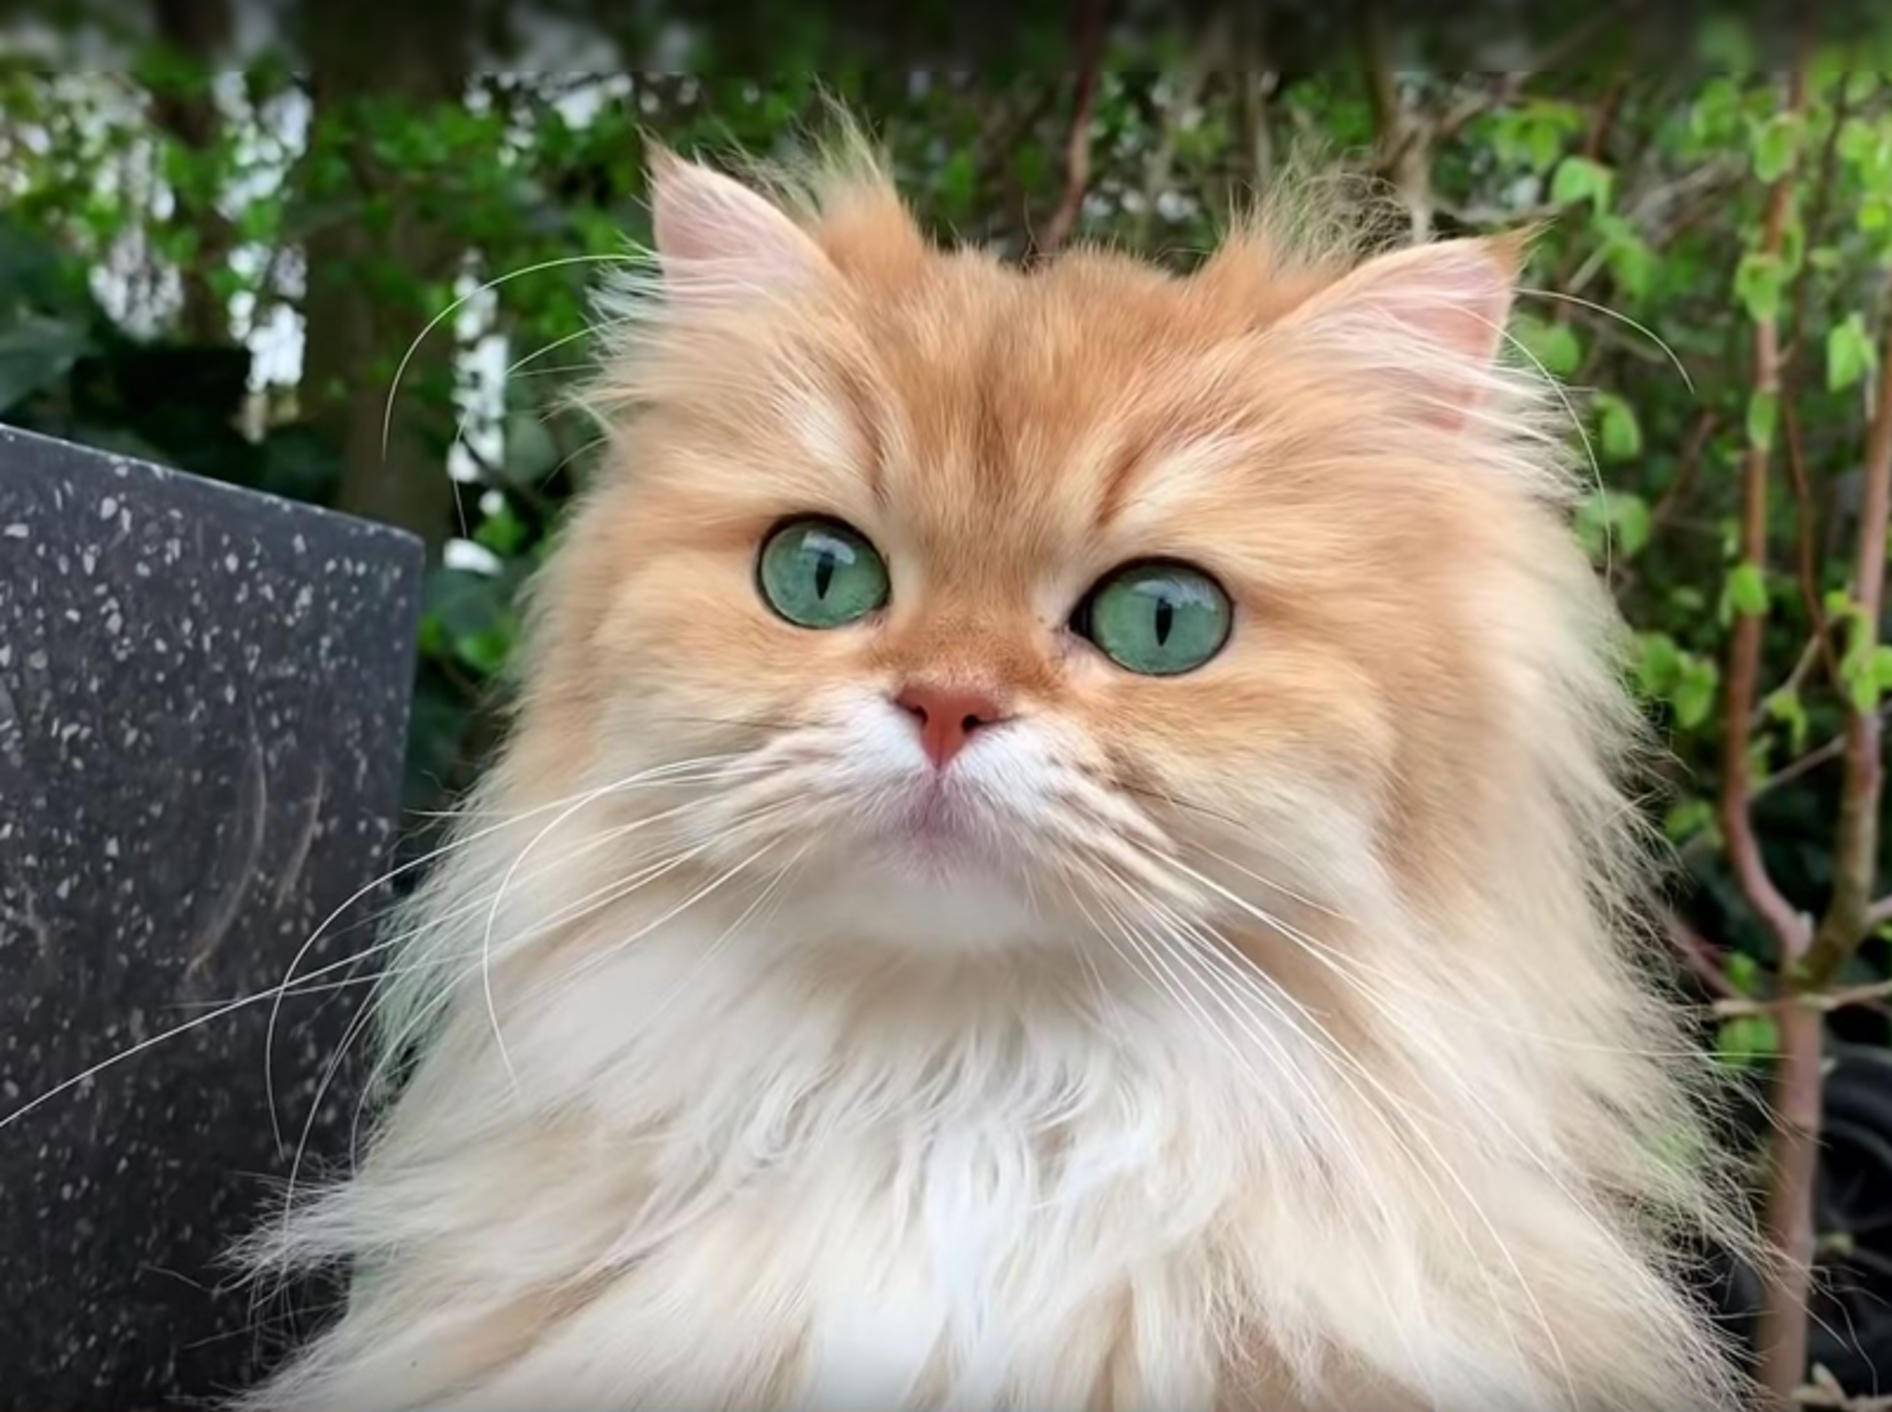 Flauschkatze Smoothie bei ihrem ersten Gartenausflug – YouTube / smoothiethecat